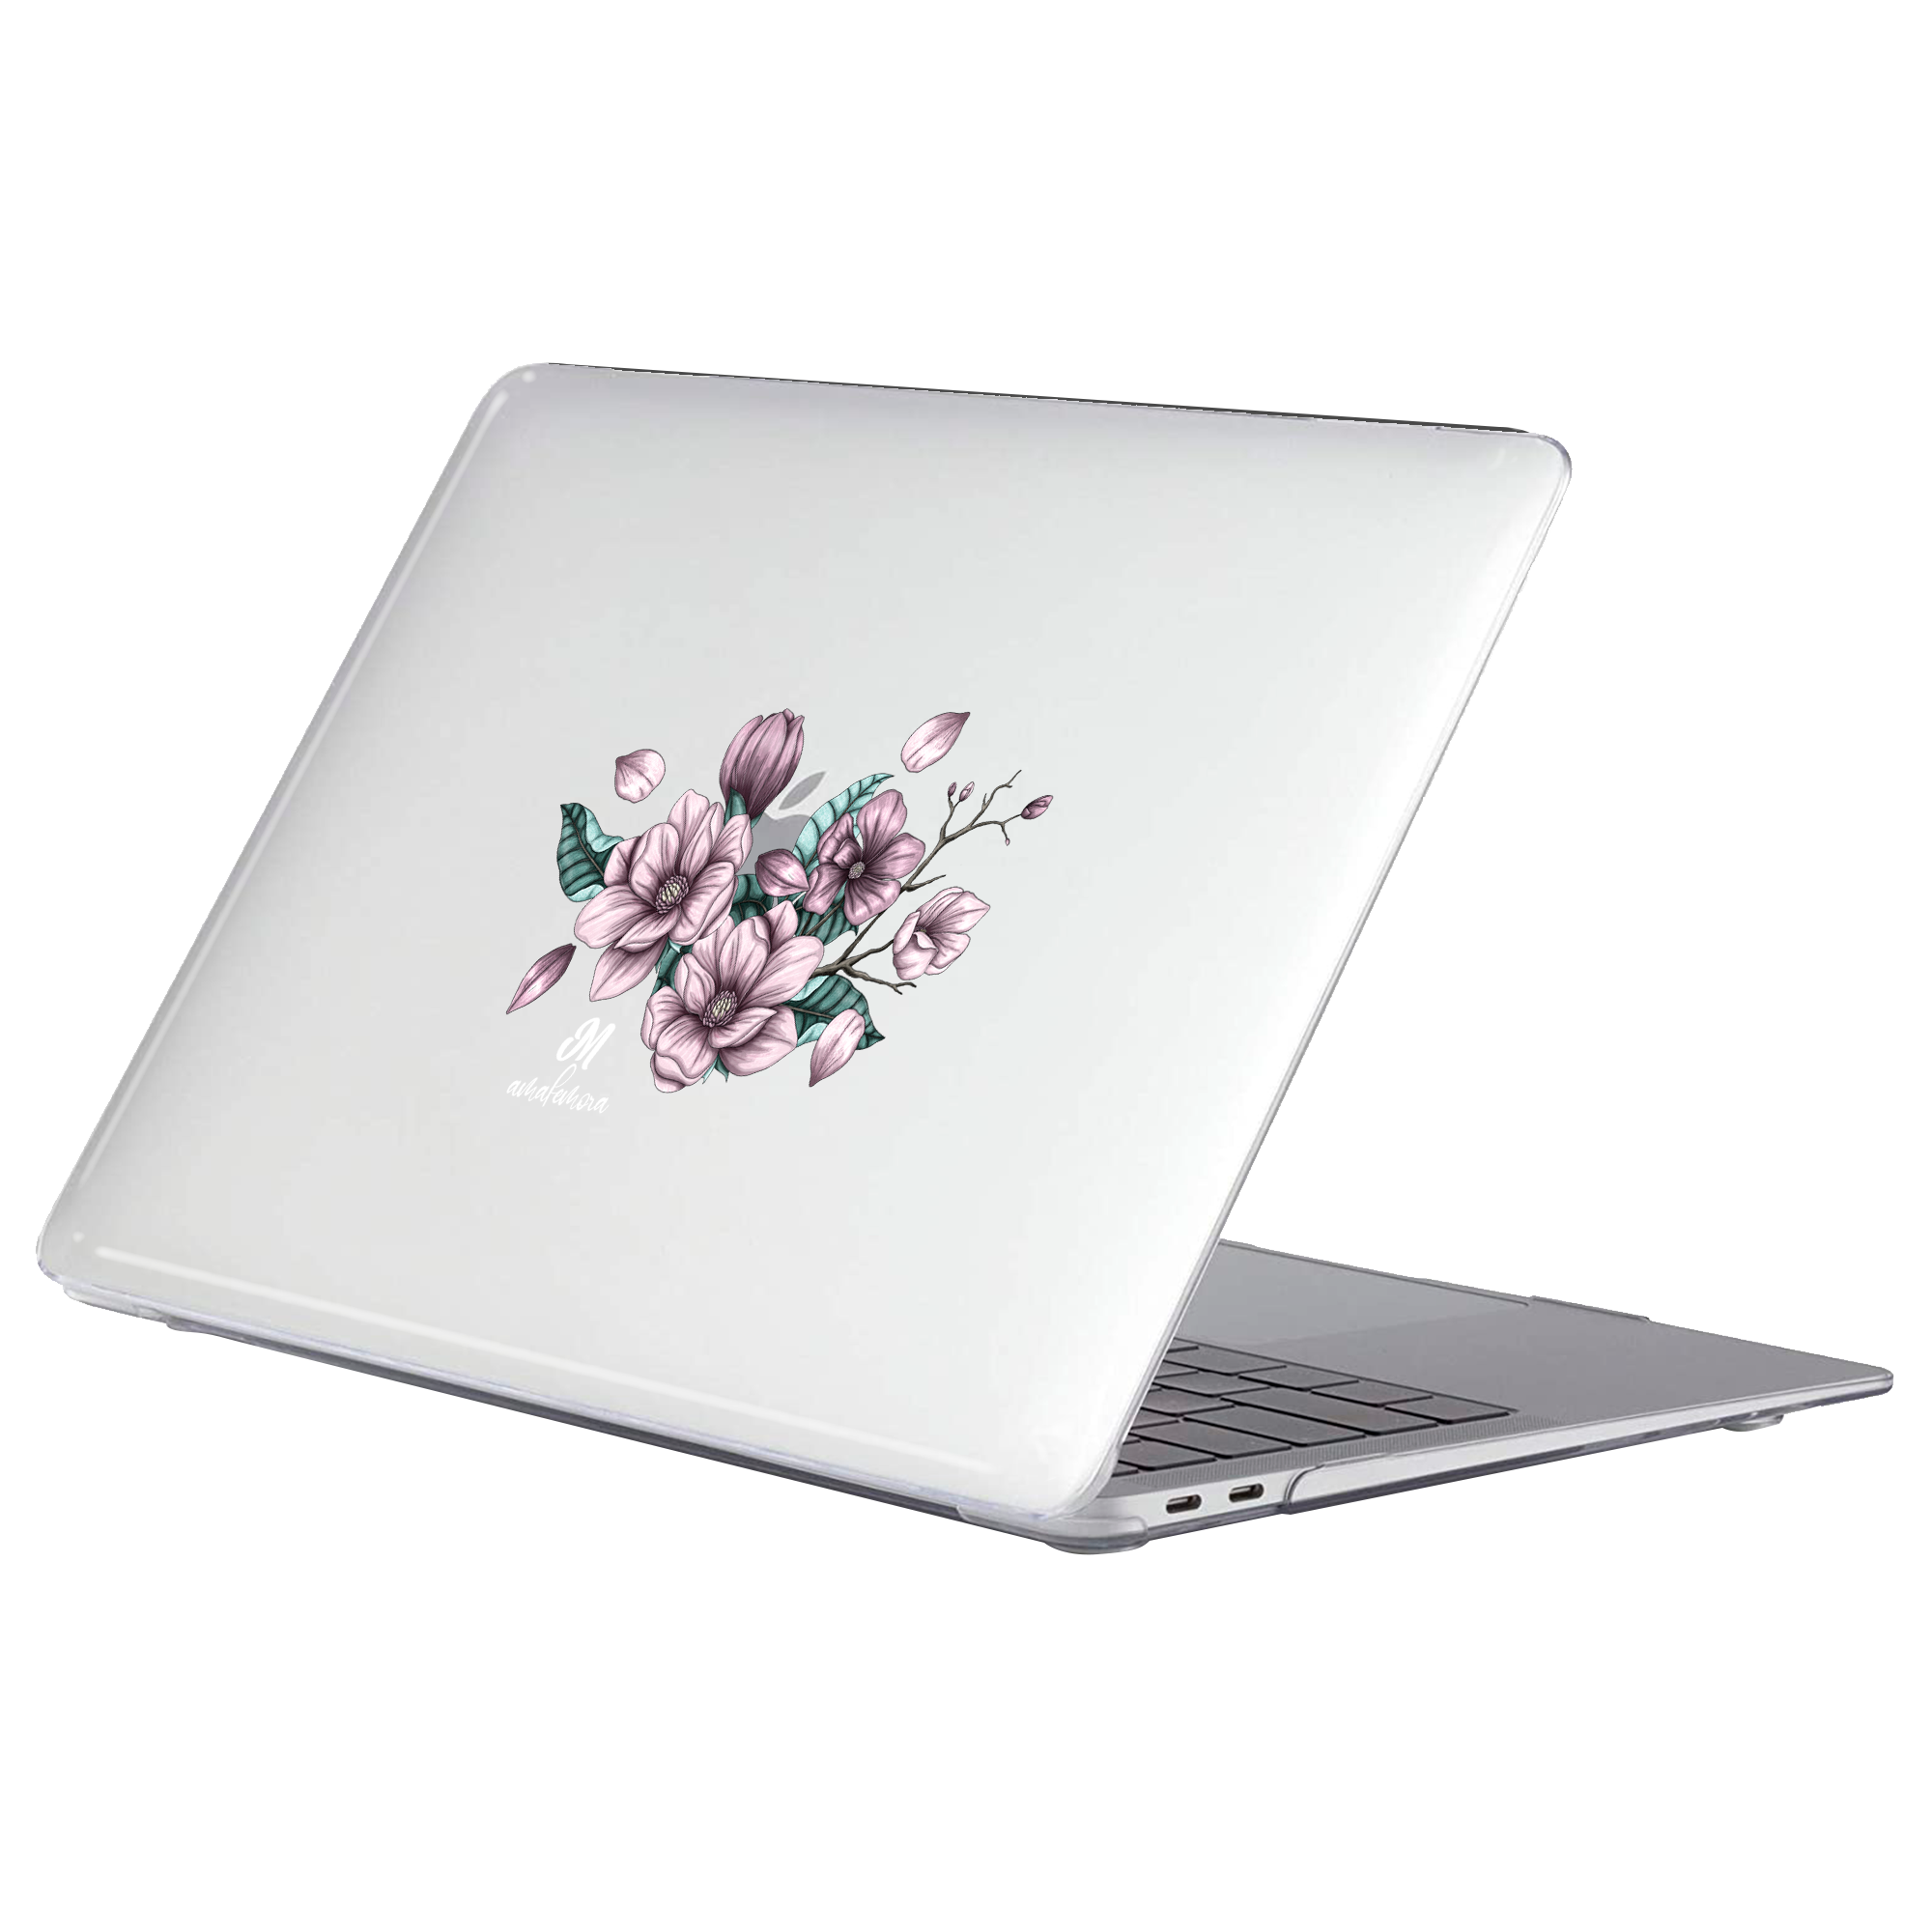 Magnolias MacBook Case - Mandala Cases